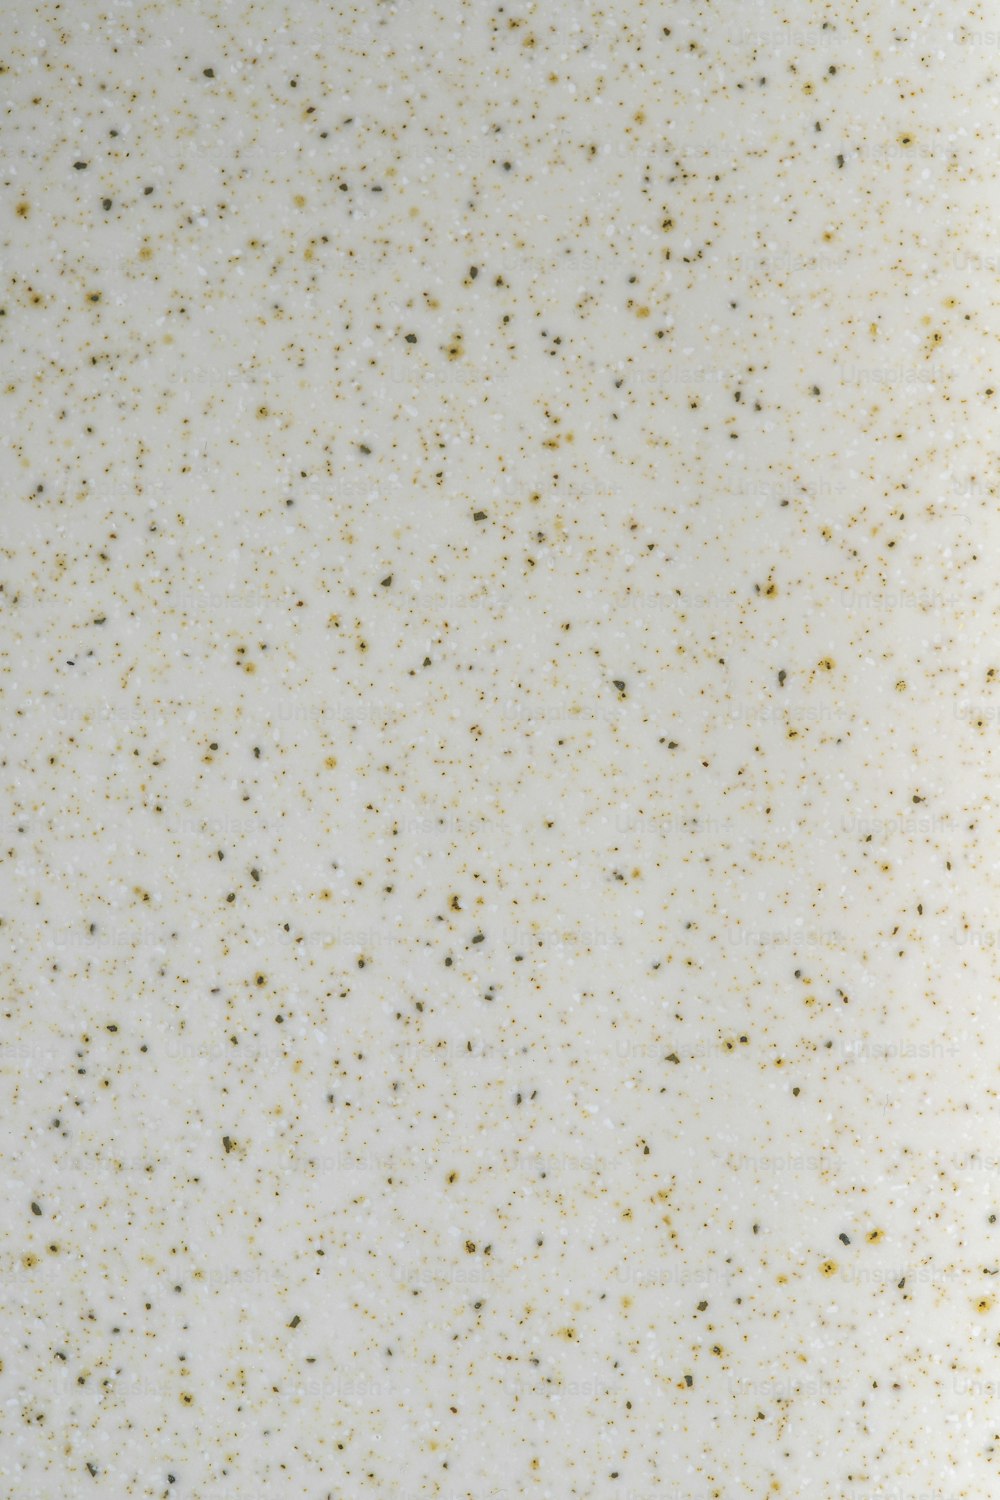 um close up de uma superfície branca com manchas de ouro